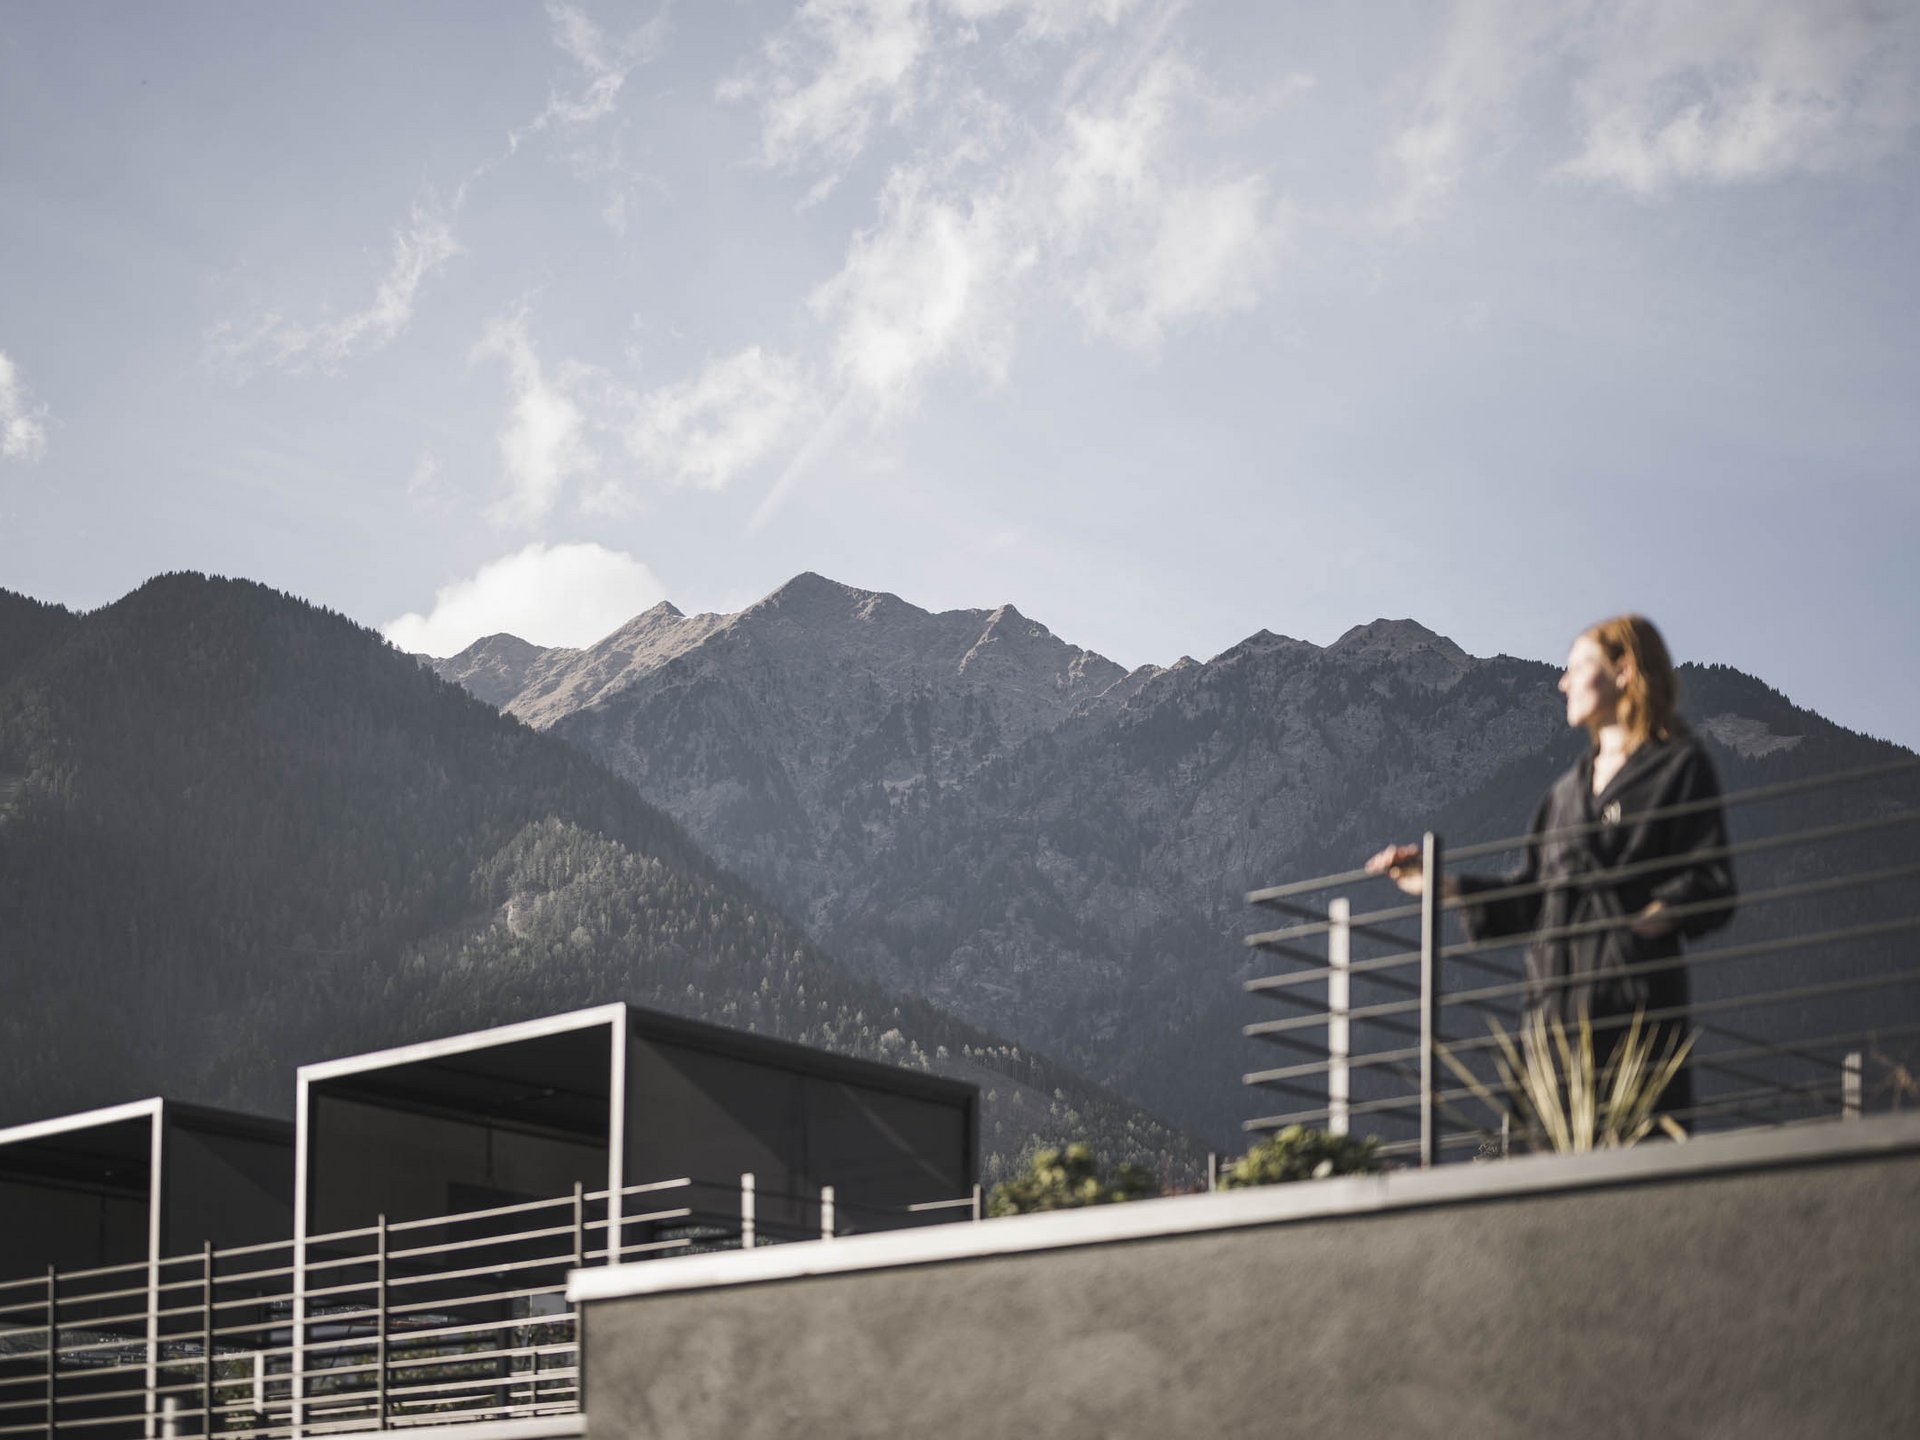 Ihr Appartement in Dorf Tirol – Genuss in den SomVita Suites